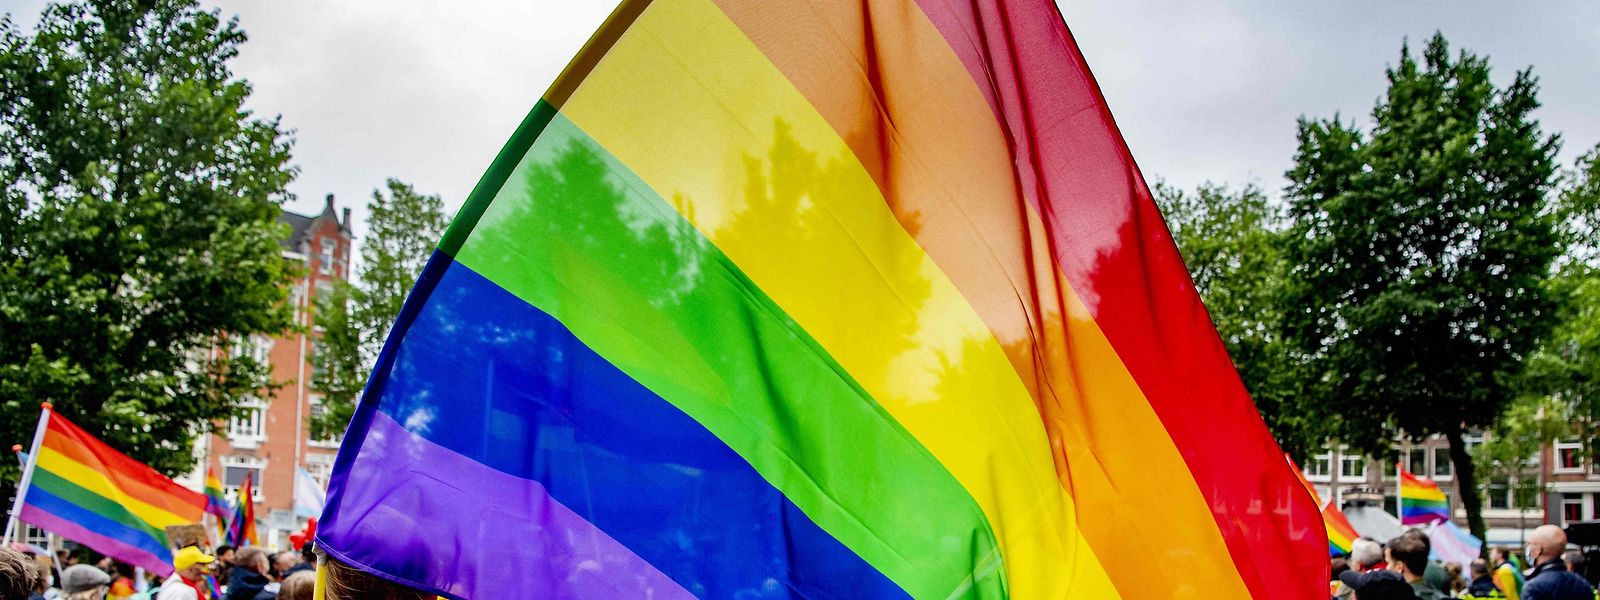  Ein ungarisches Gesetz, das die Rechte von LGBT-Menschen untergräbt, sorgt unter den EU-Staats- und Regierungschefs mehrheitlich für Kritik.